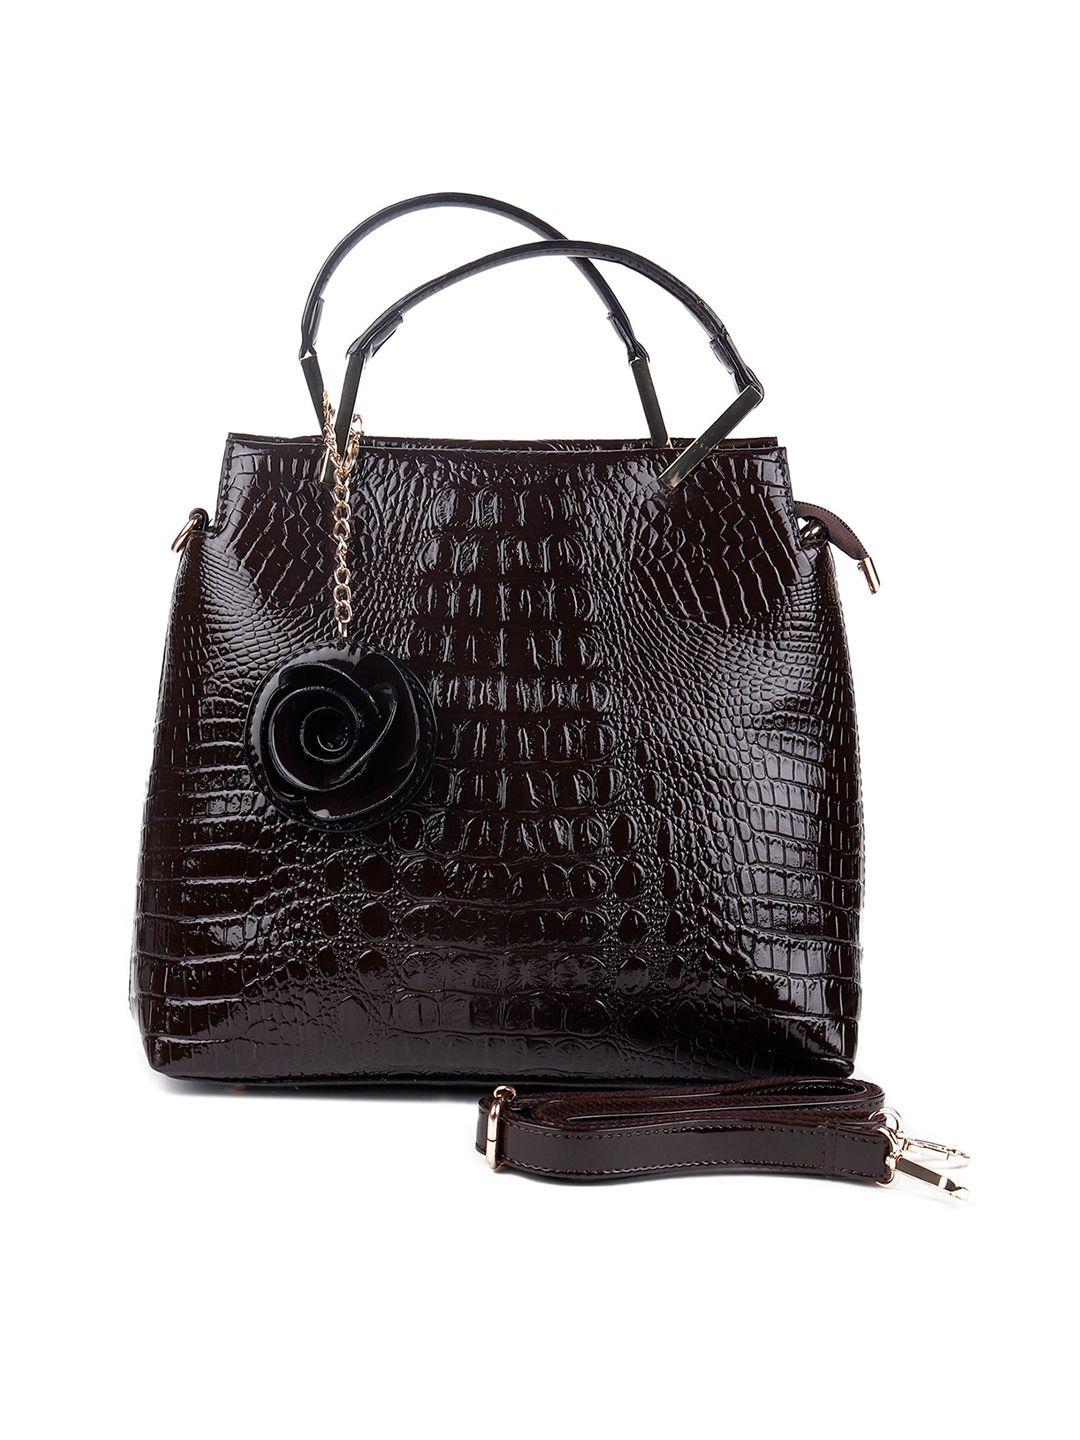 odette black textured leather structured handheld bag